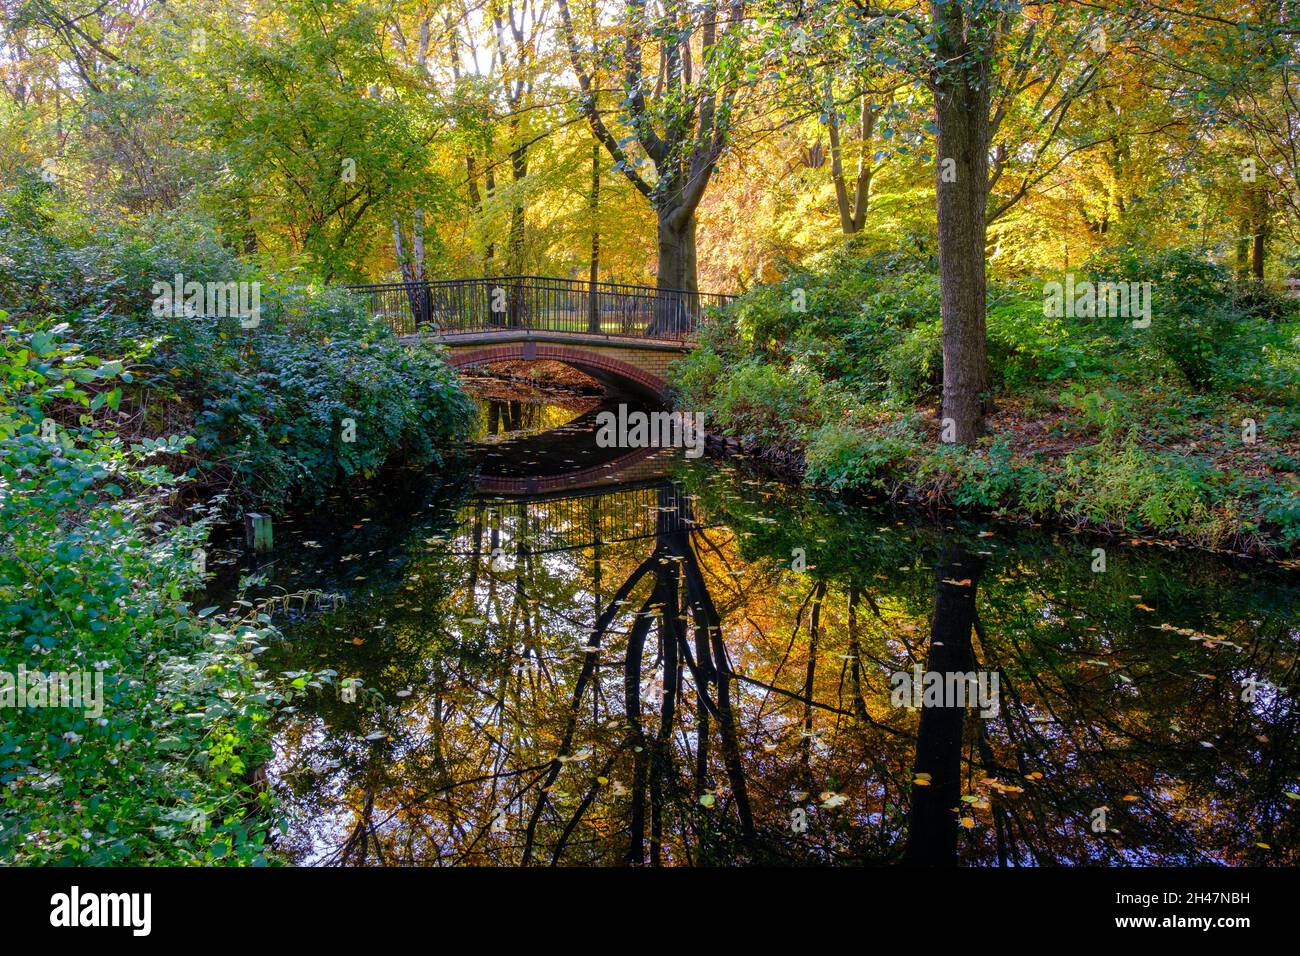 Berlin Tiergarten park in autumn Stock Photo